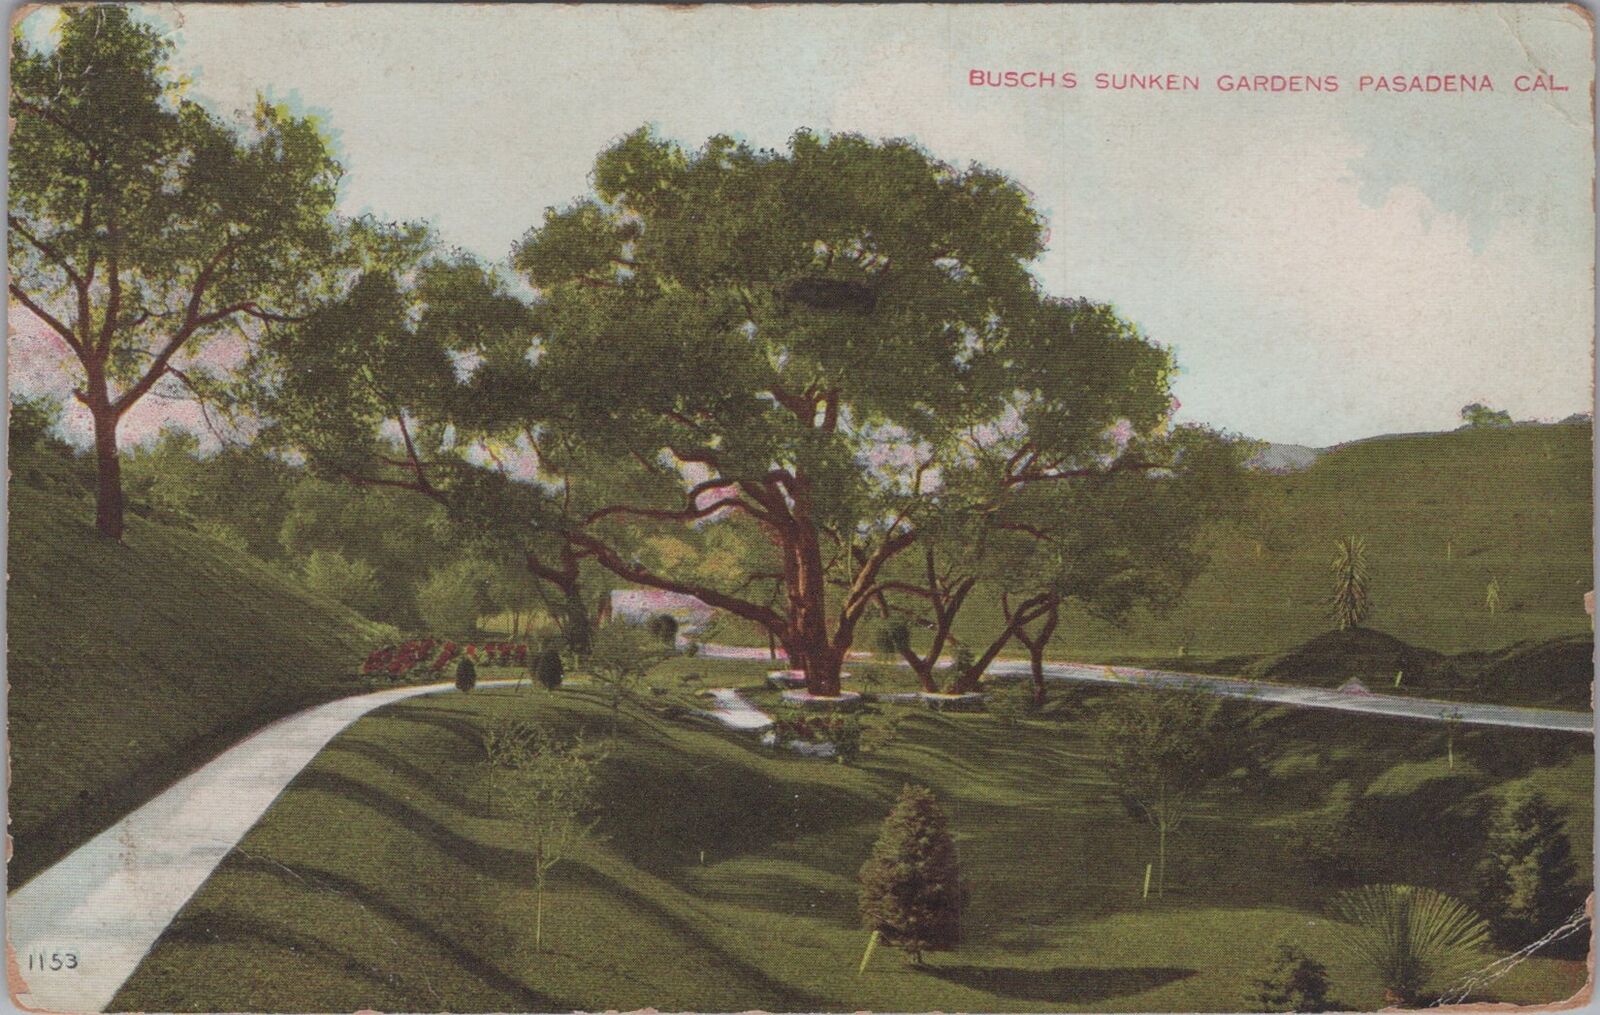 Busch's Sunken Gardens Pasadena California Postcard